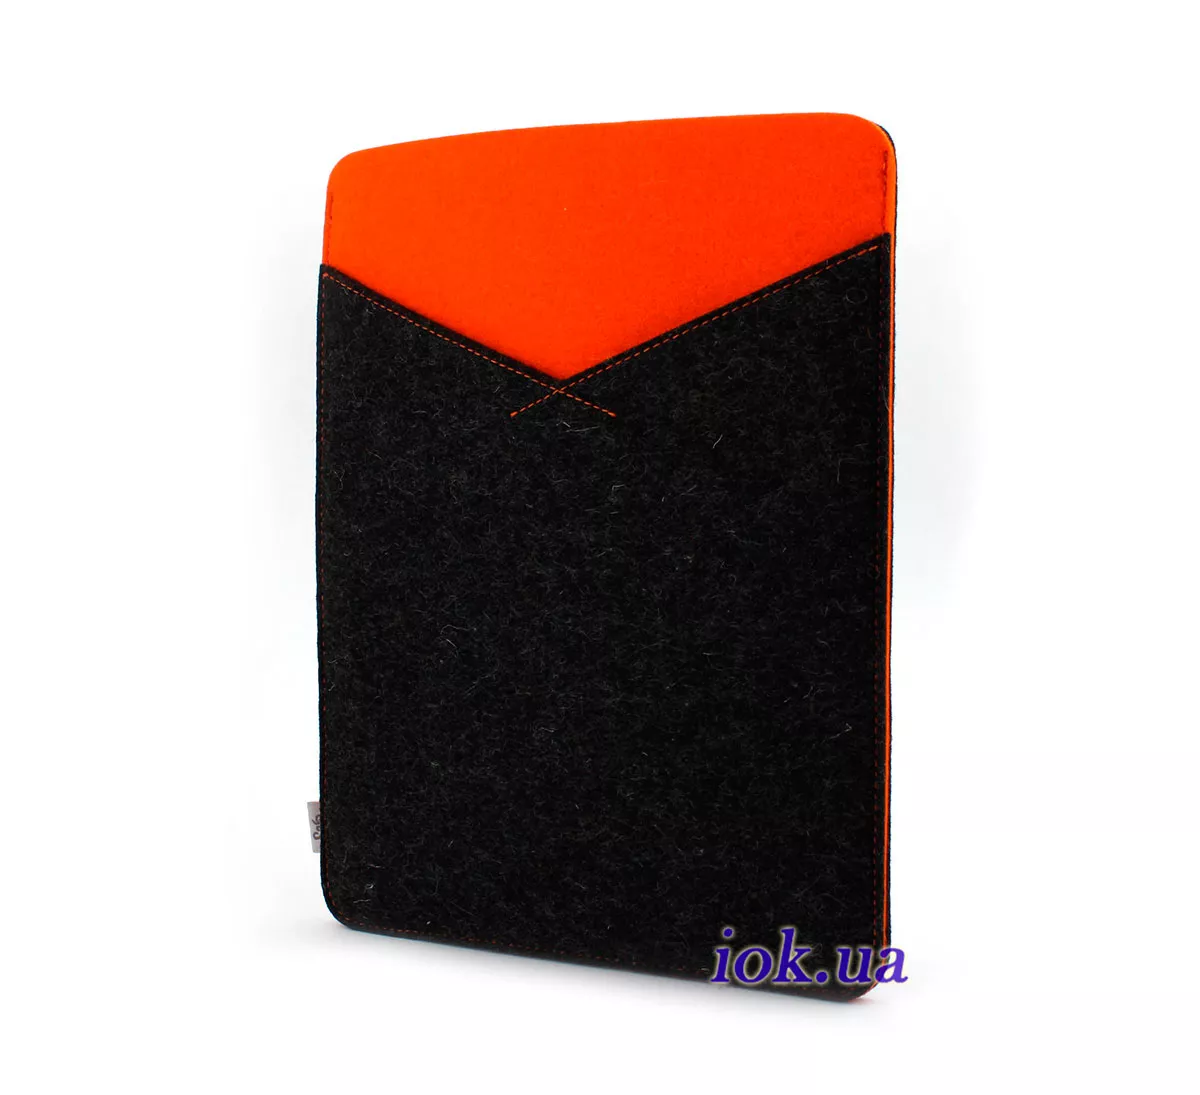 Фетровый чехол Safo для iPad 2/3/4, оранжевый